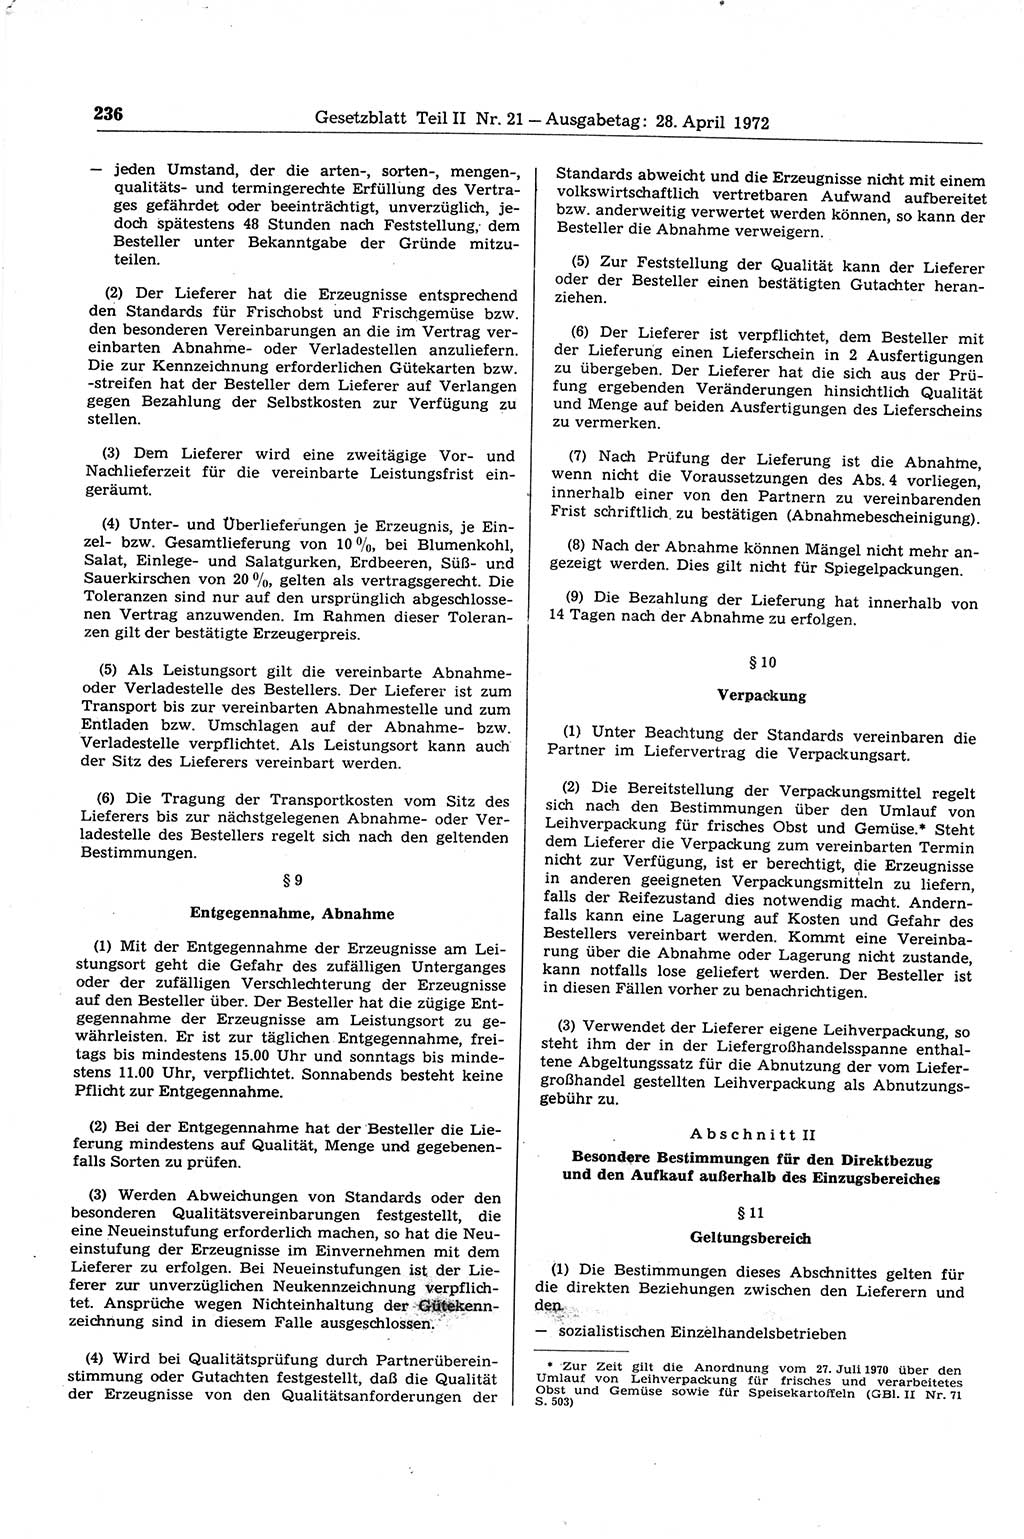 Gesetzblatt (GBl.) der Deutschen Demokratischen Republik (DDR) Teil ⅠⅠ 1972, Seite 236 (GBl. DDR ⅠⅠ 1972, S. 236)